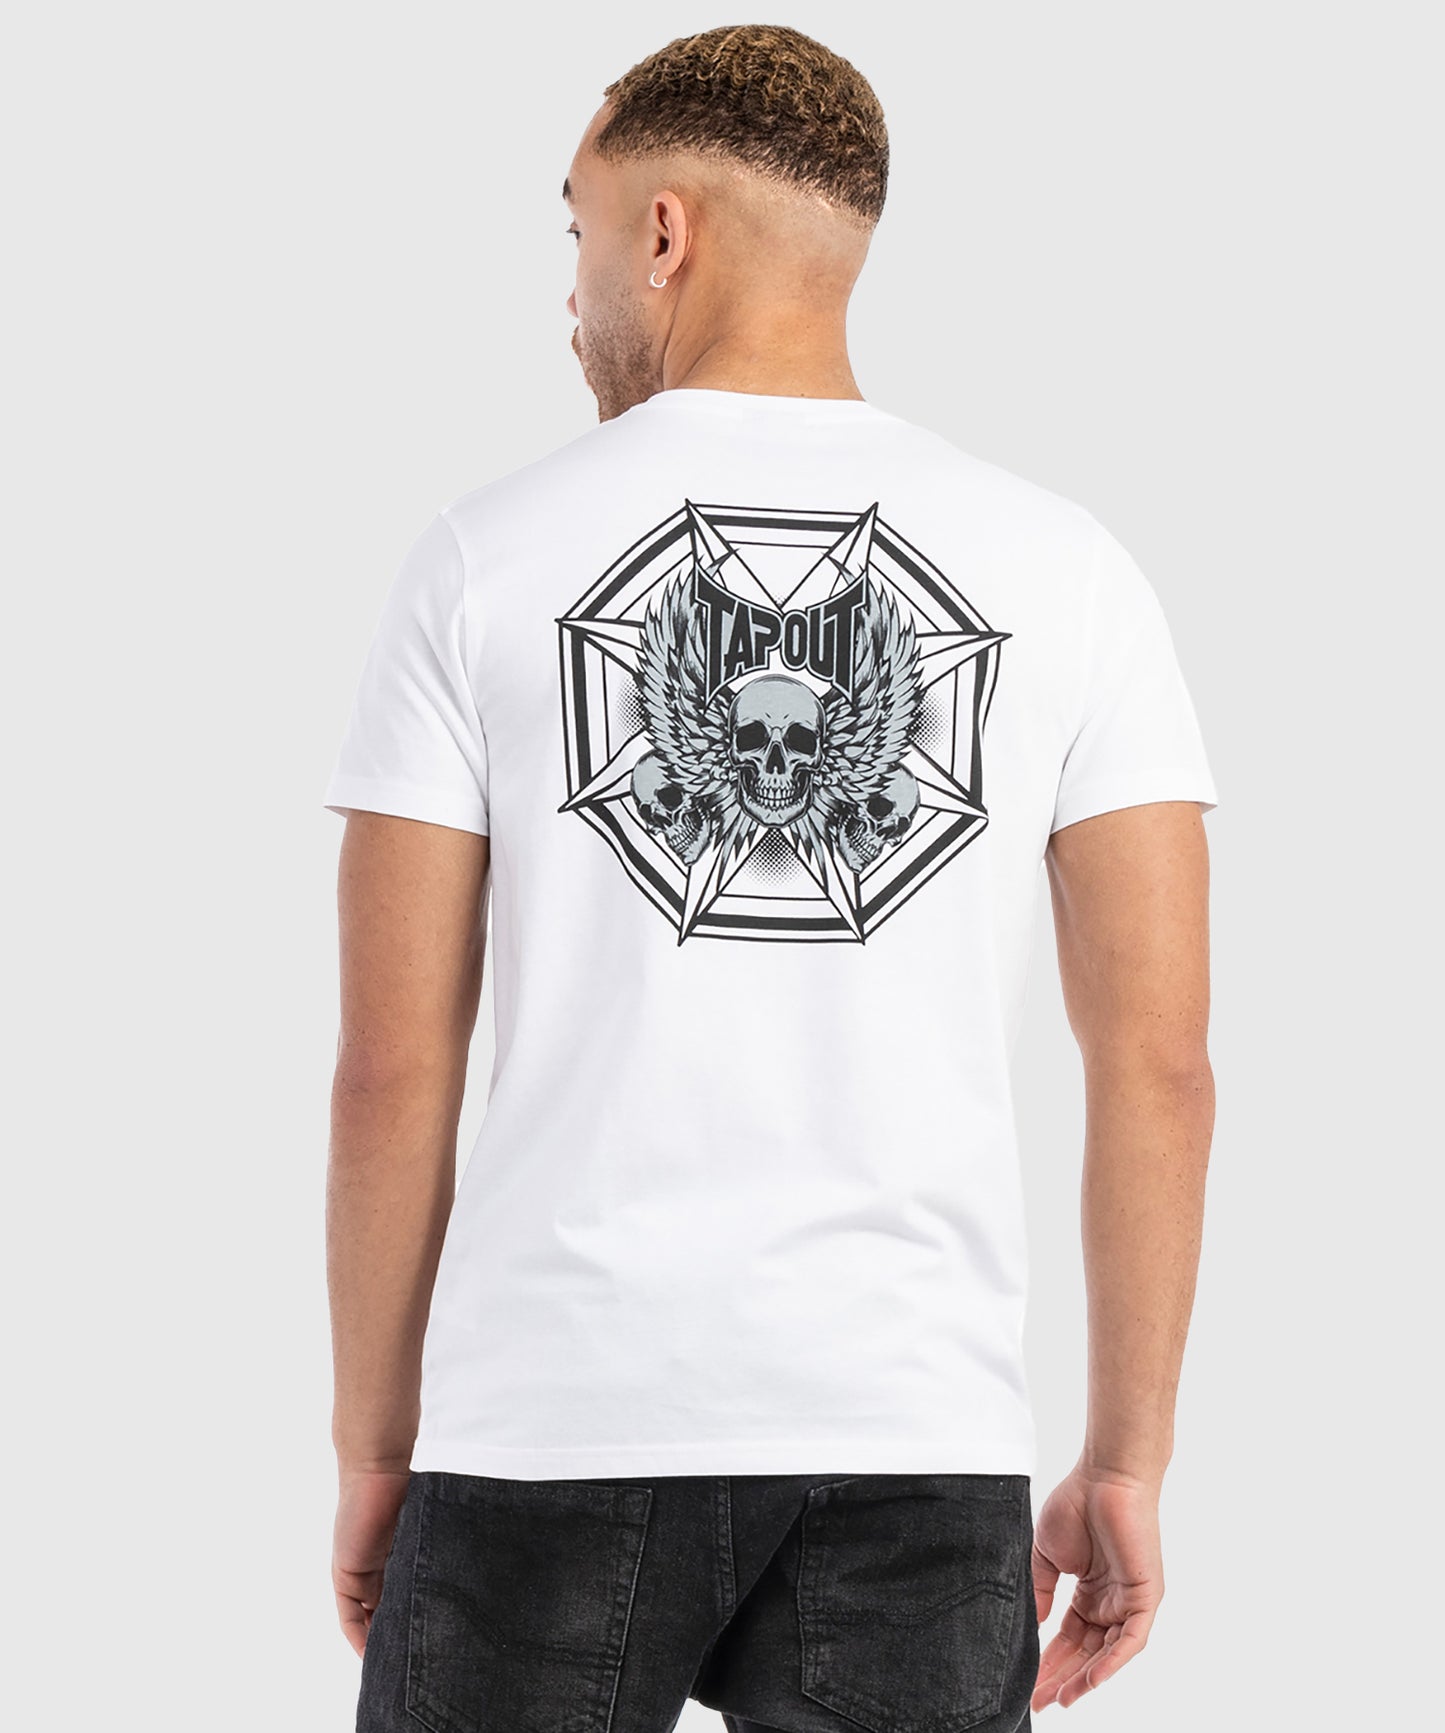 T-Shirt Tapout Octogon - Blanc/Noir